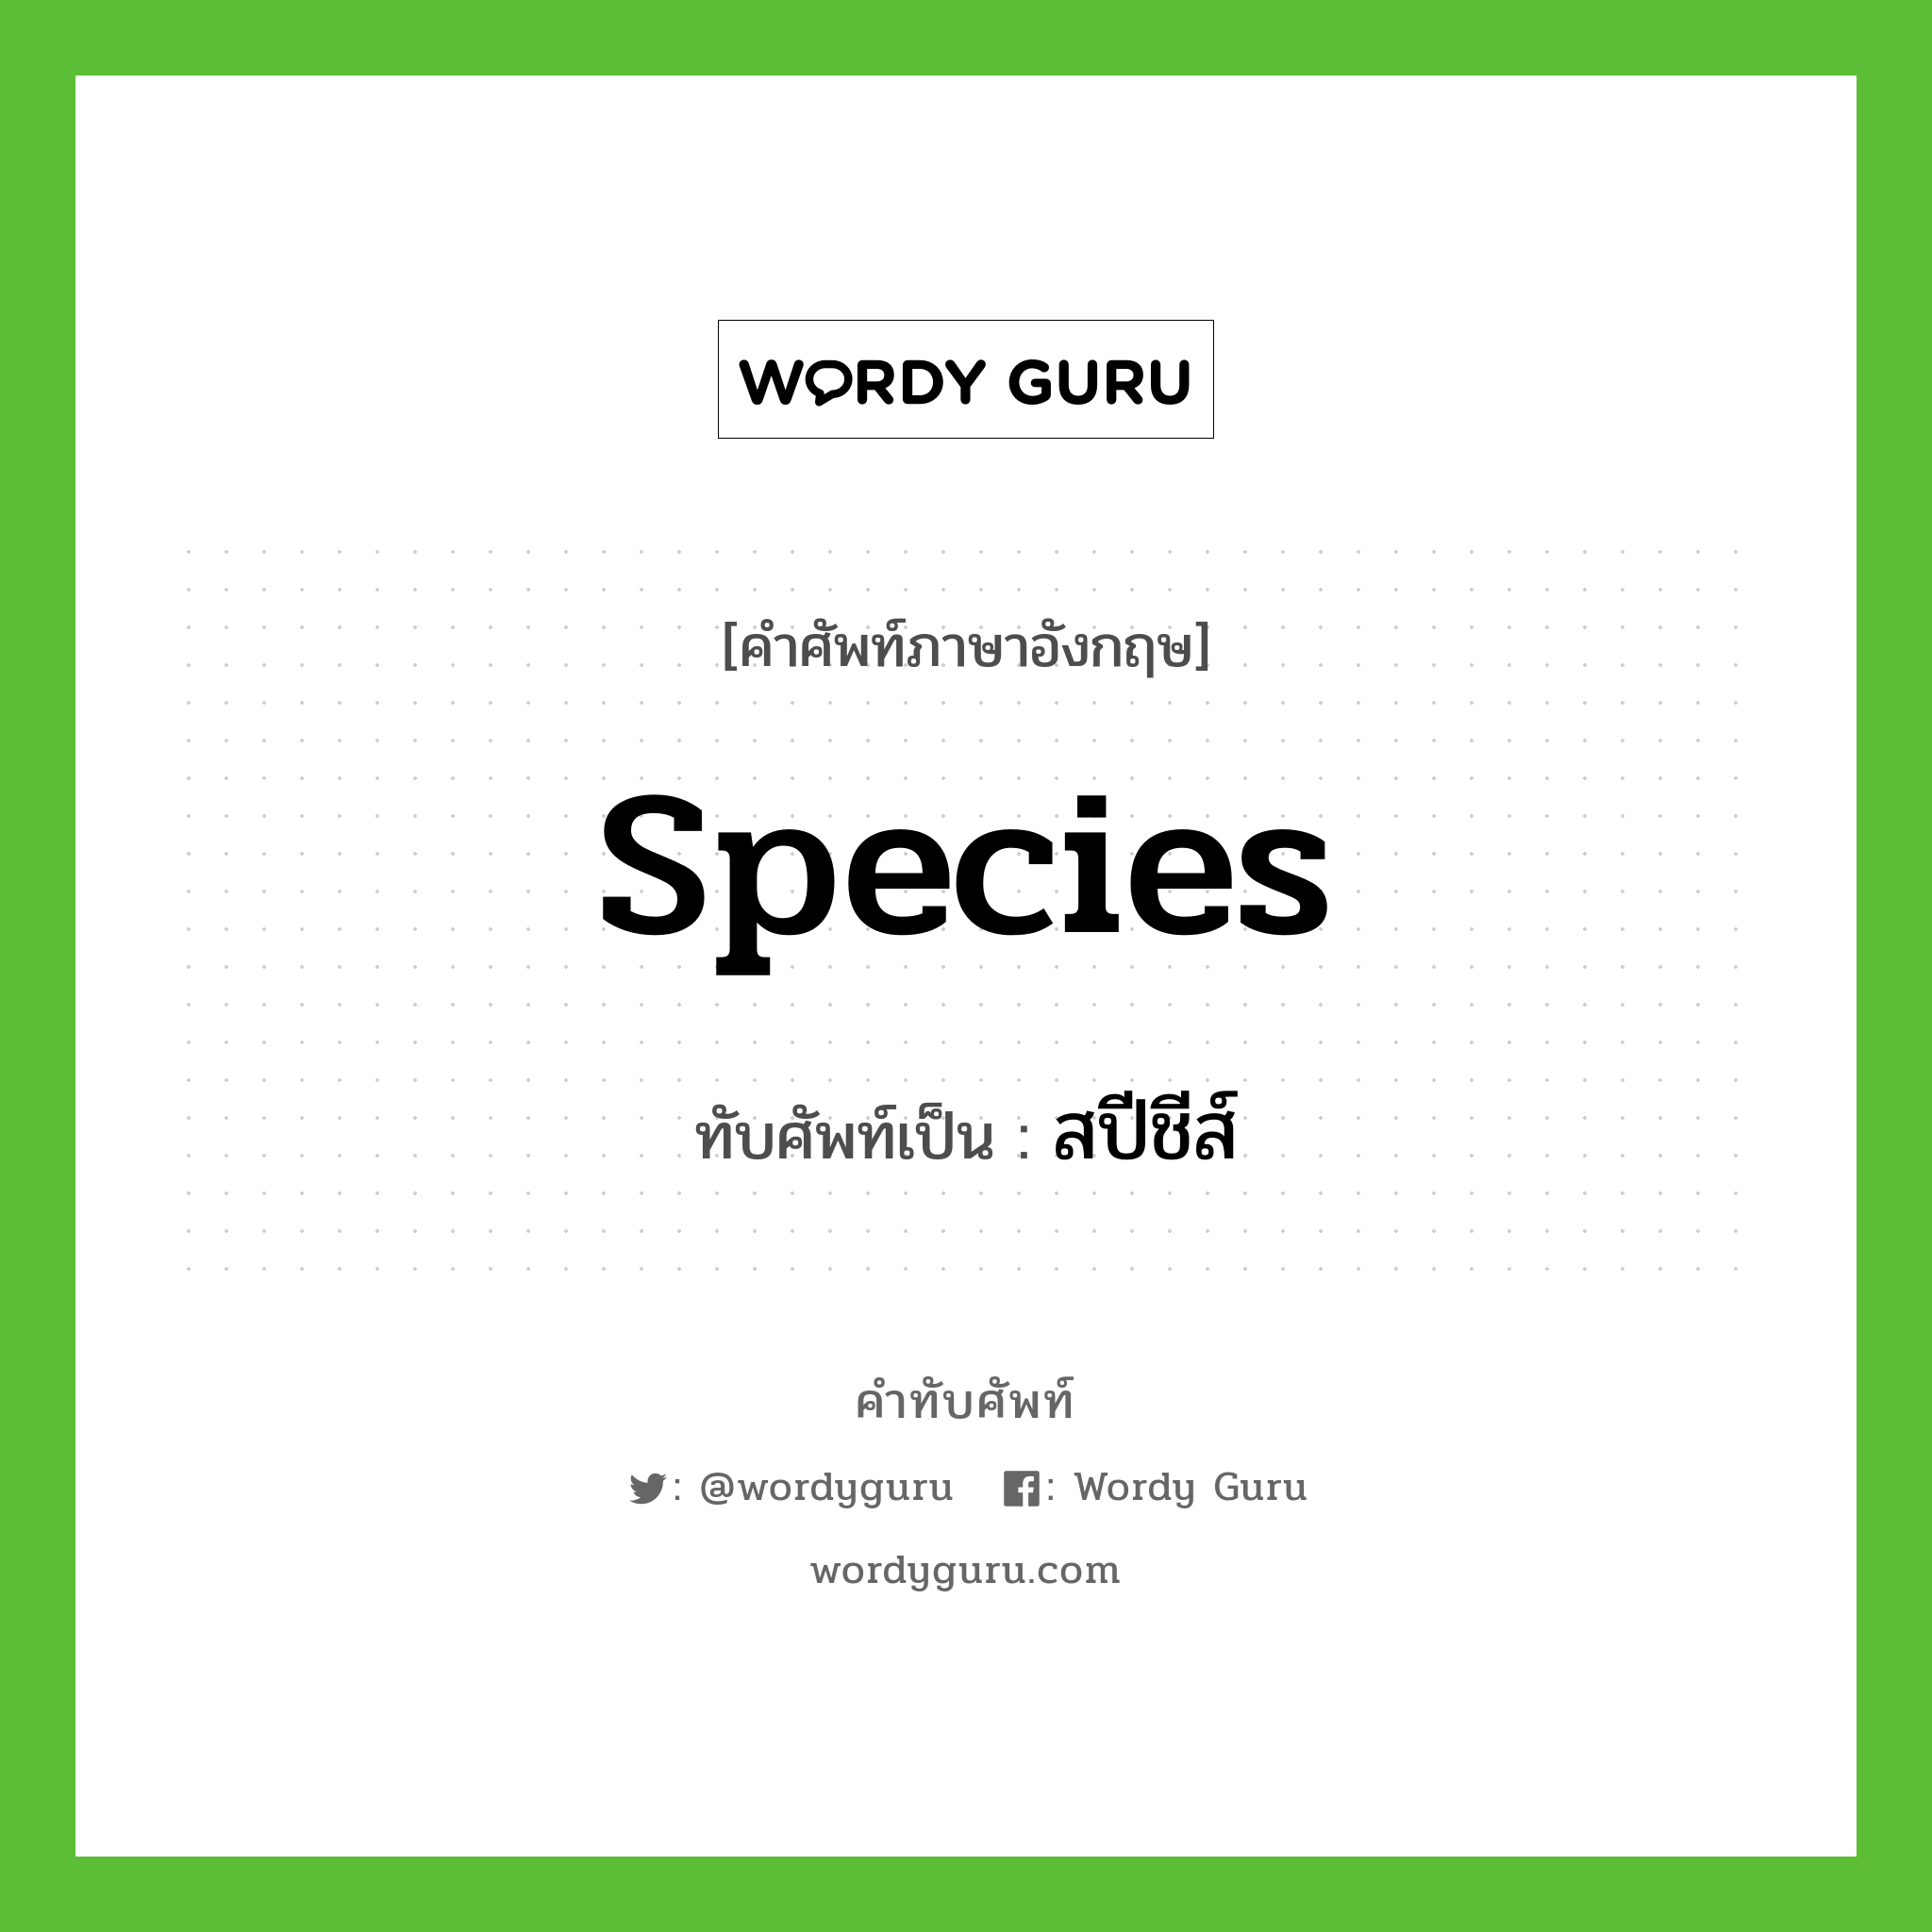 species เขียนเป็นคำไทยว่าอะไร?, คำศัพท์ภาษาอังกฤษ species ทับศัพท์เป็น สปีชีส์